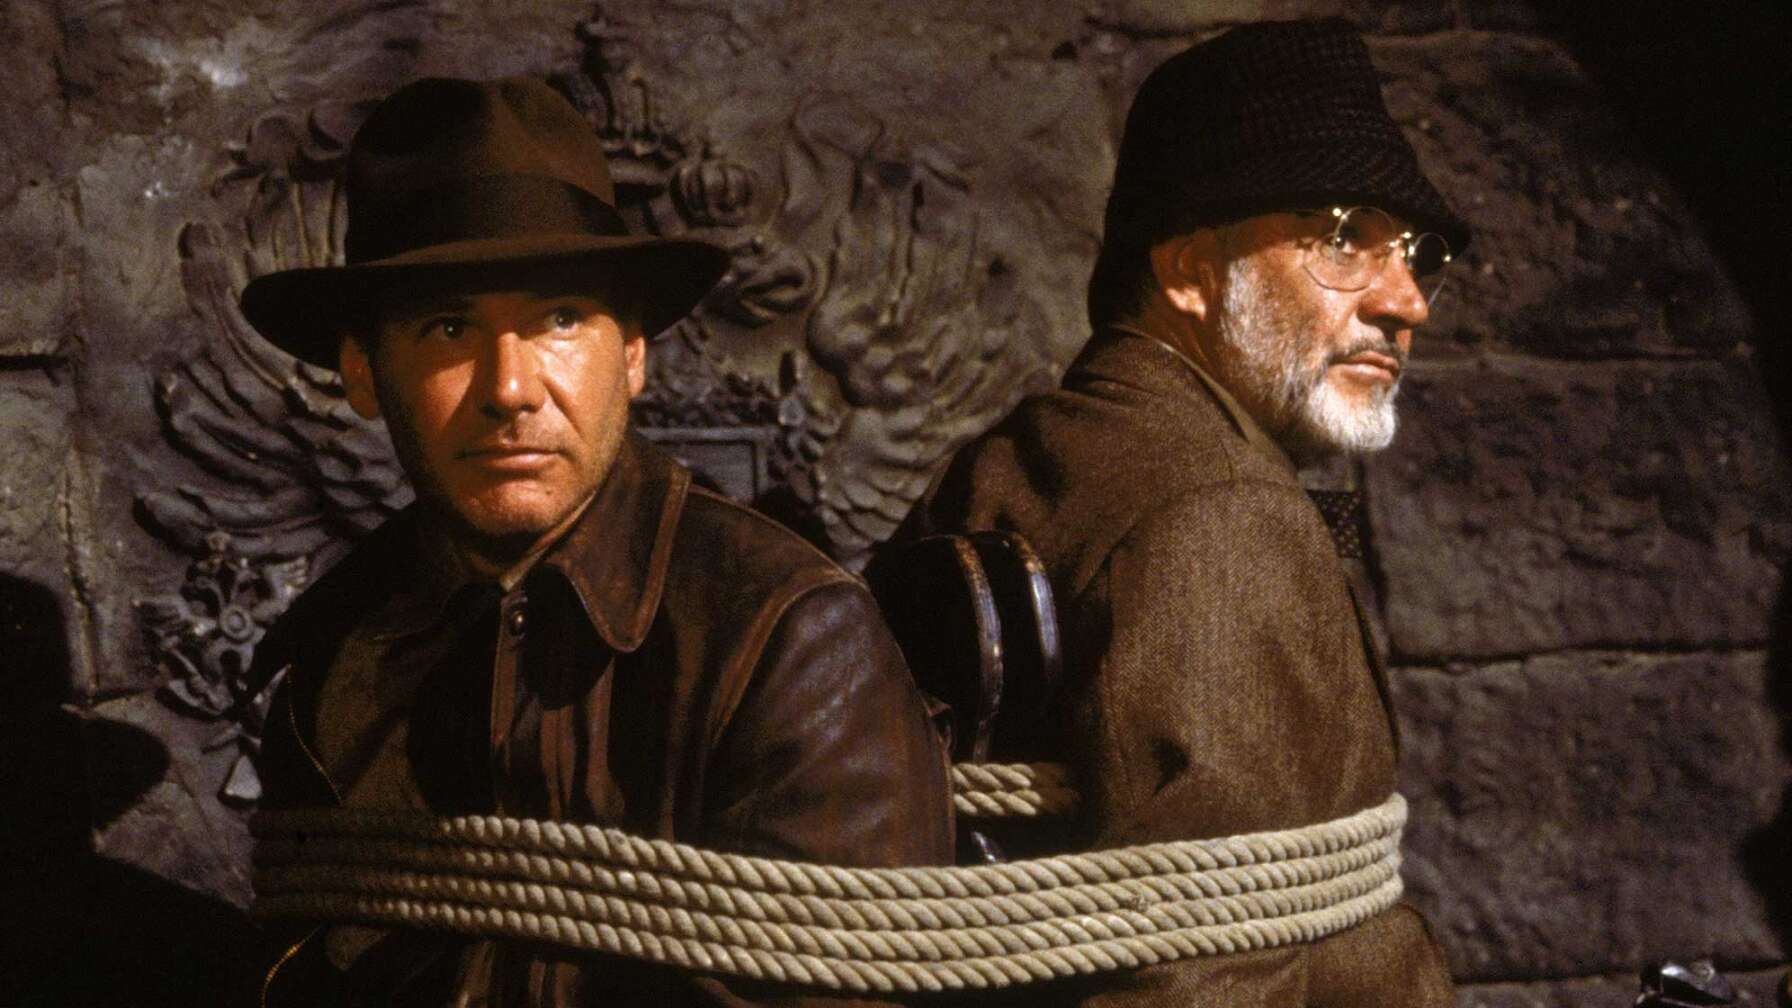 Eine Szene aus "Indiana Jones - Jäger des verlorenen Schatzes" mit den Schauspielern Harrison Ford und Sean Connery.